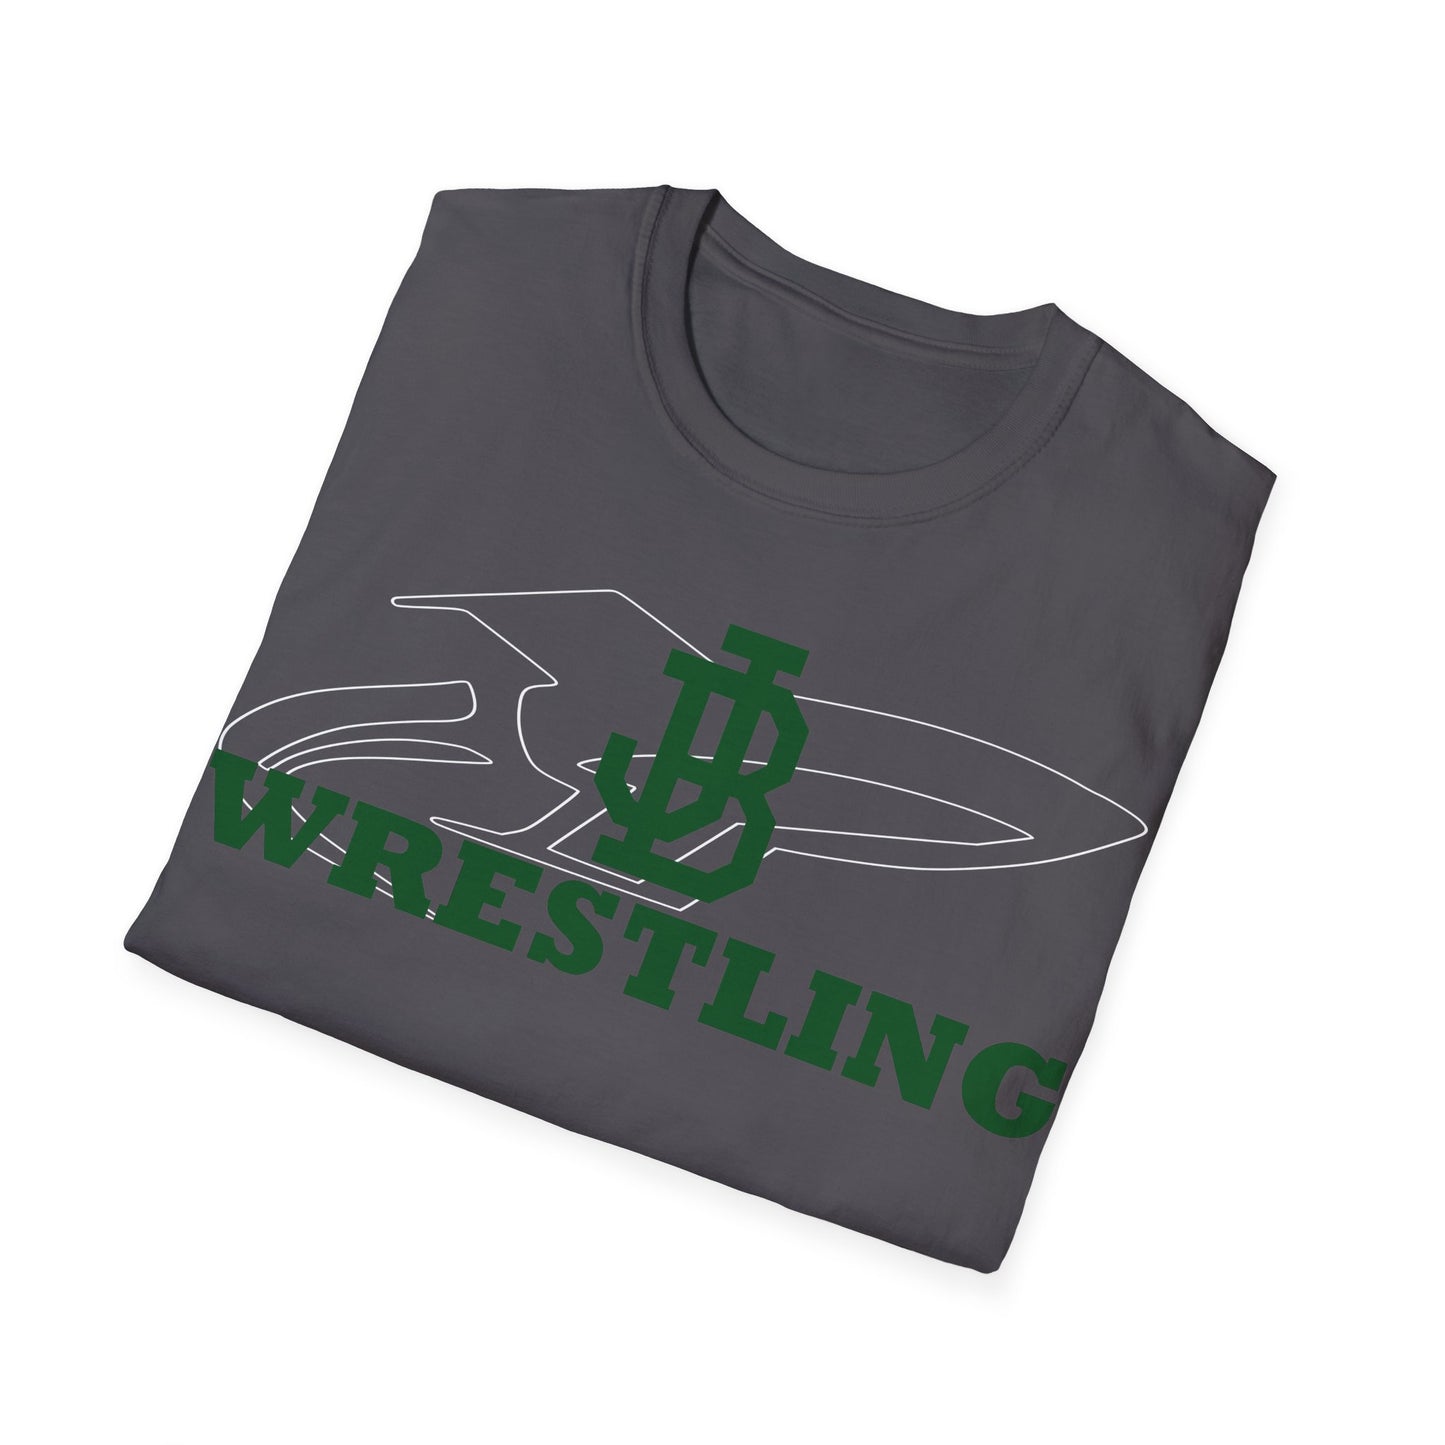 JB Wrestling Unisex Softstyle T-Shirt